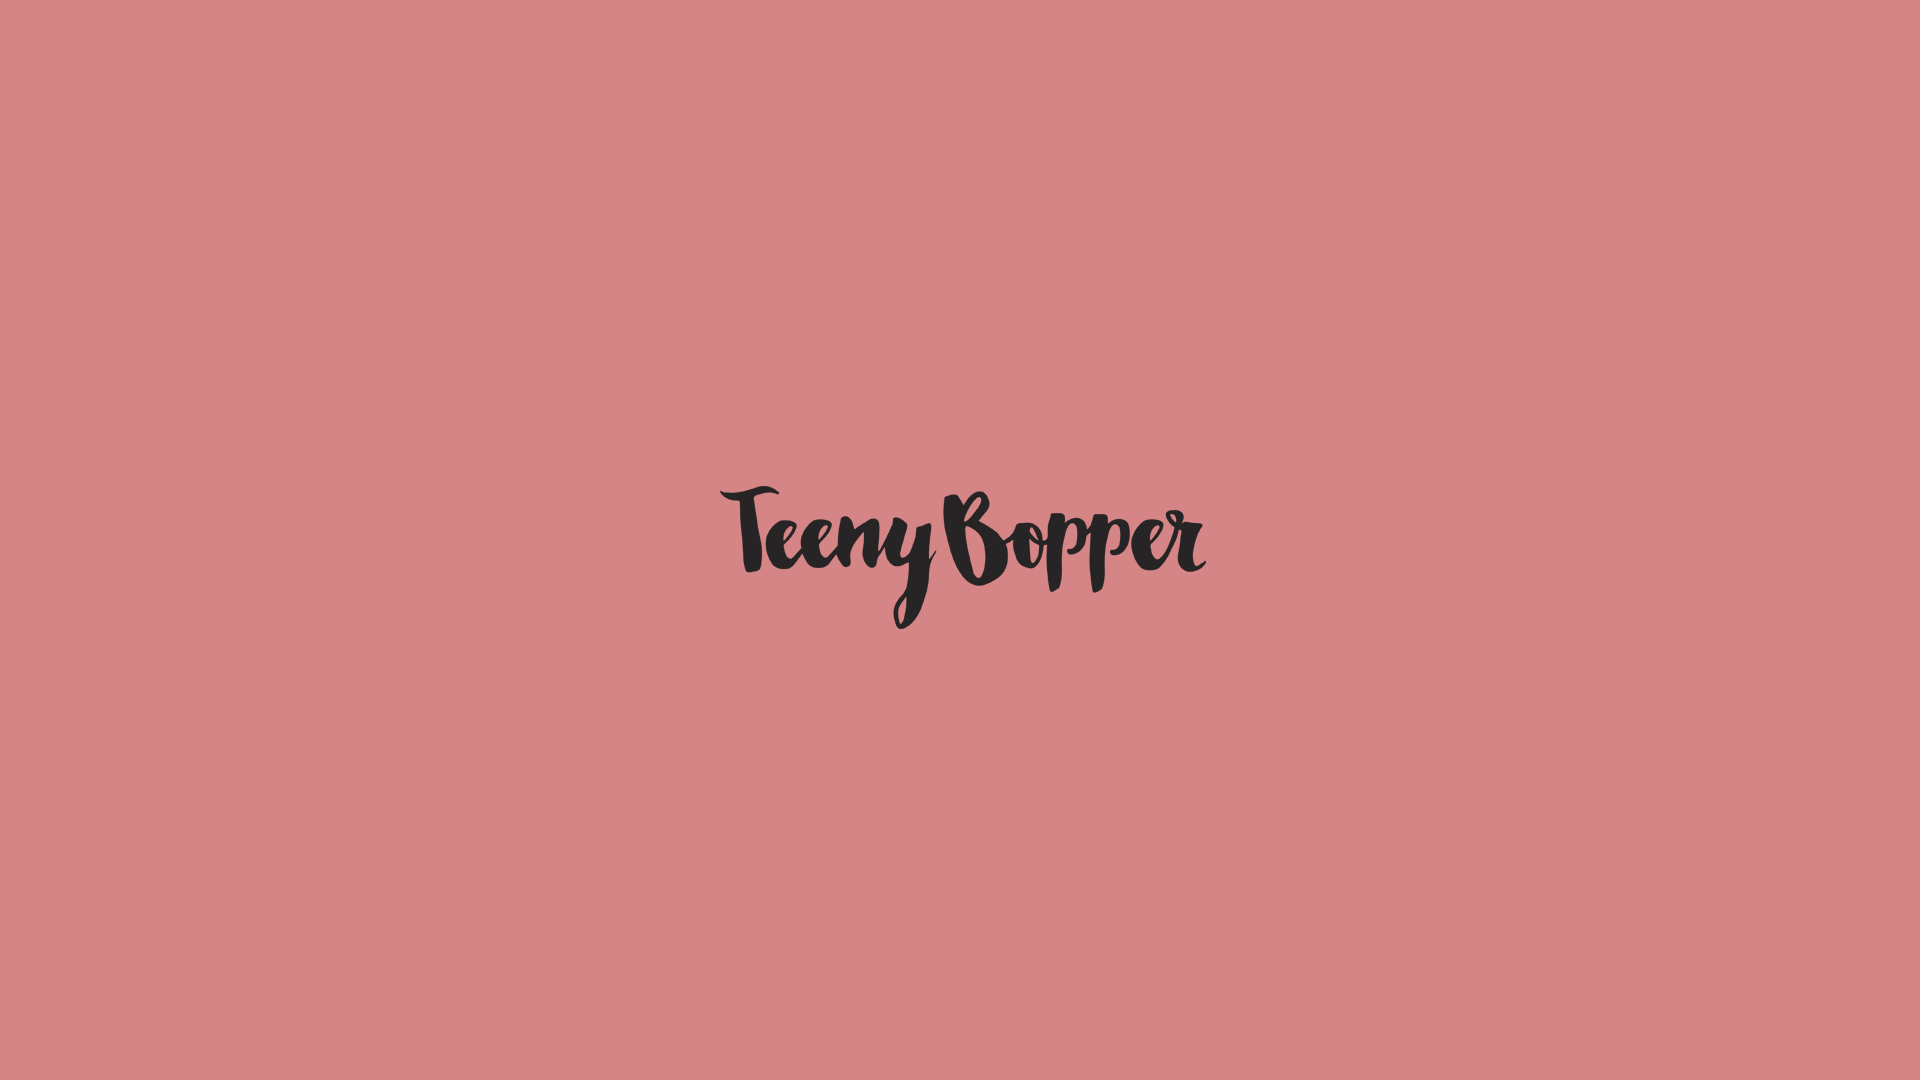 Teeny Bopper, web hecha por murciègalo en 2015